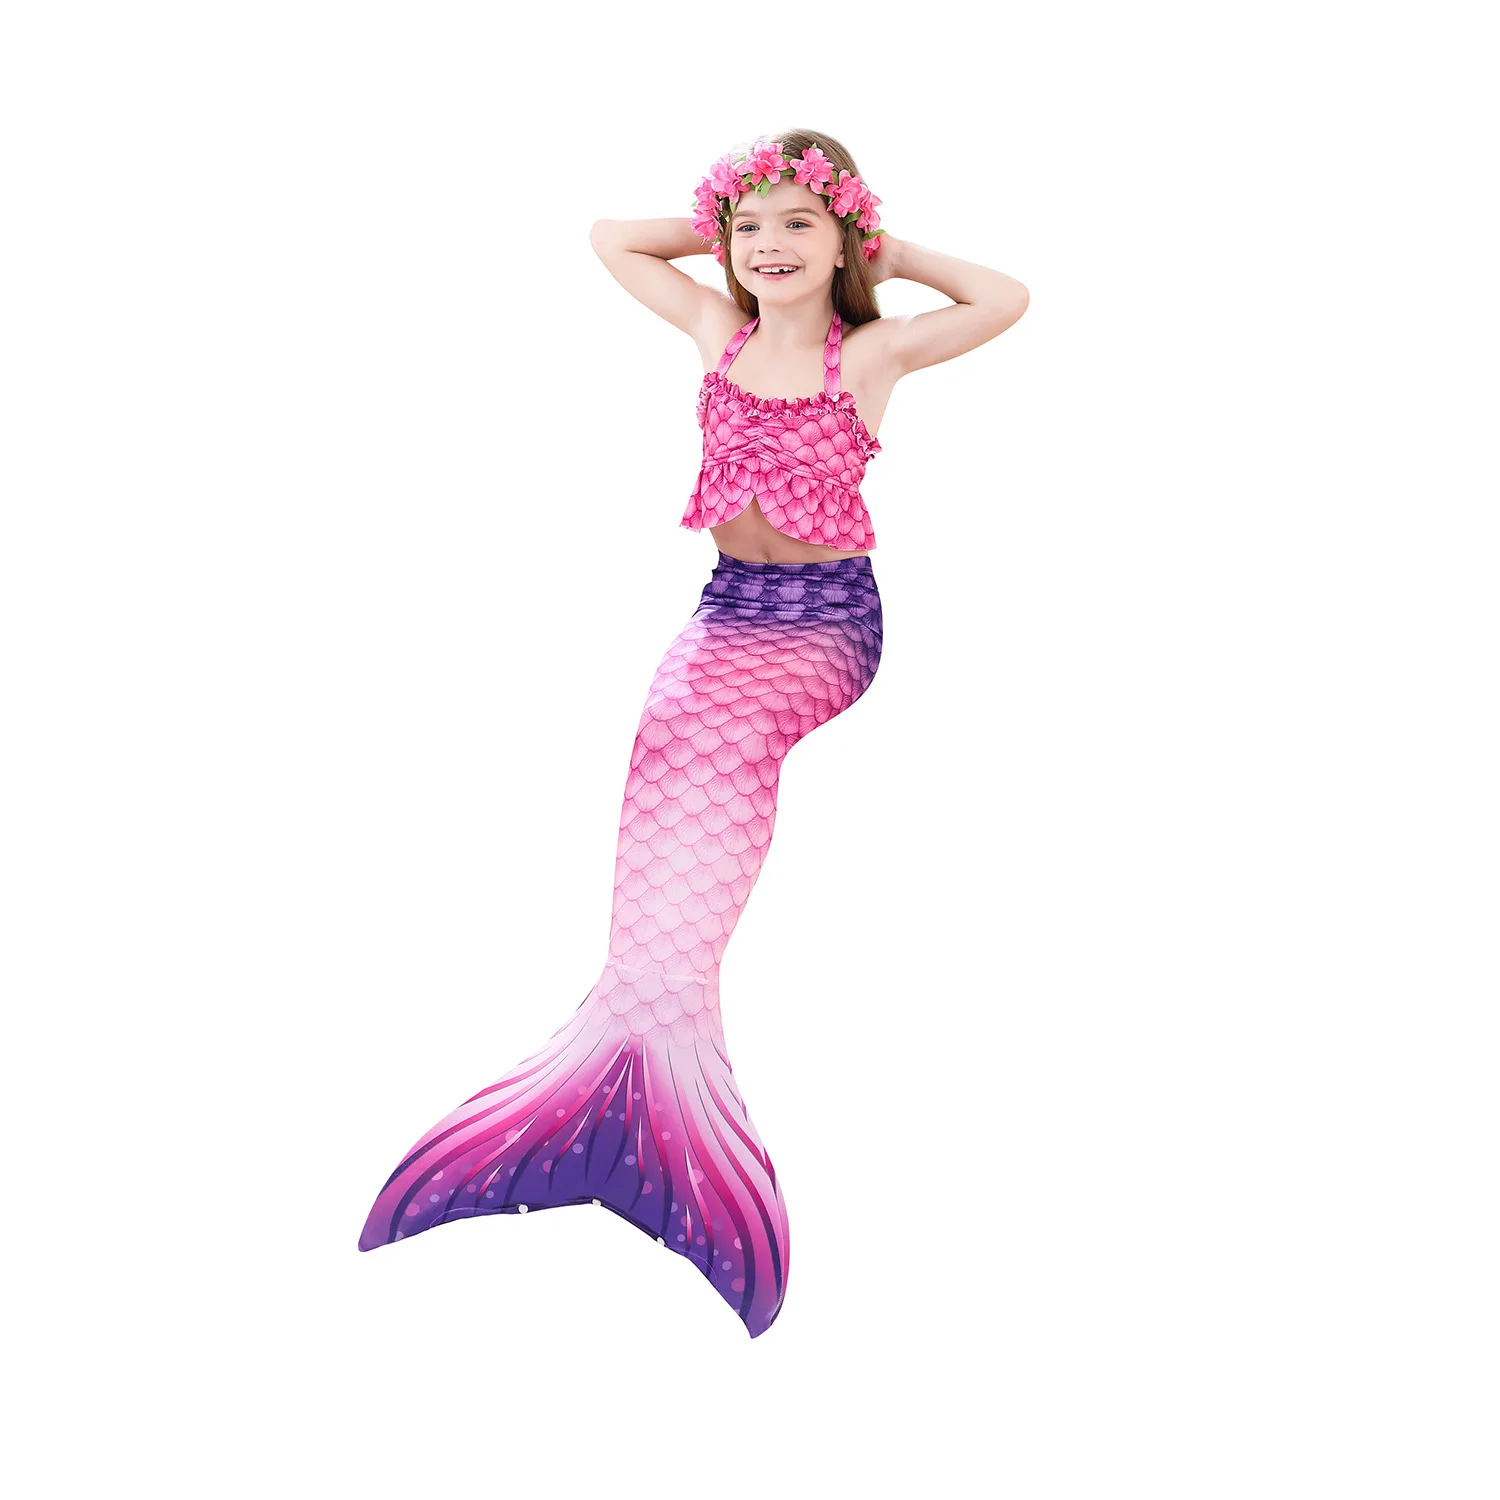 elvira costume Haojxuanyu Children Mermaid Swimwear Girls Pink Blue Bikini Set Kids Swimsuit Cosplay Mermaid Tail Costume for Swimming morticia addams dress